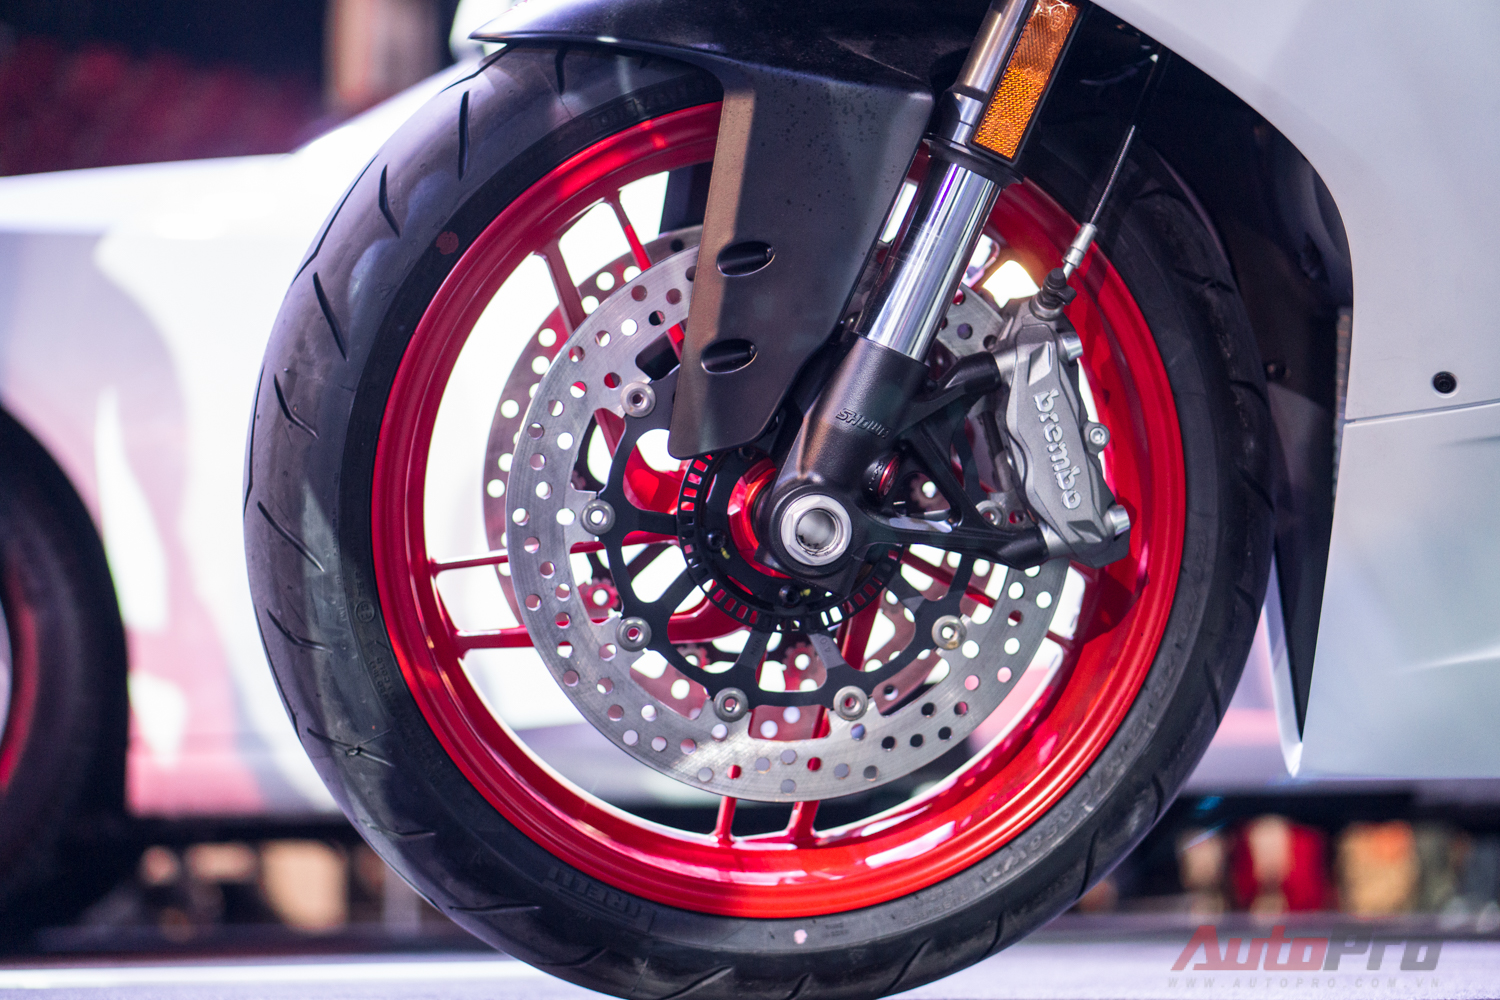 
Ducati 959 Panigale tiếp xúc với mặt đường thông qua bộ la-zăng 3,5 inch trước/5,5 inch sau với 10 chấu và lốp Pirelli Diablo Rosso Corsa. 
